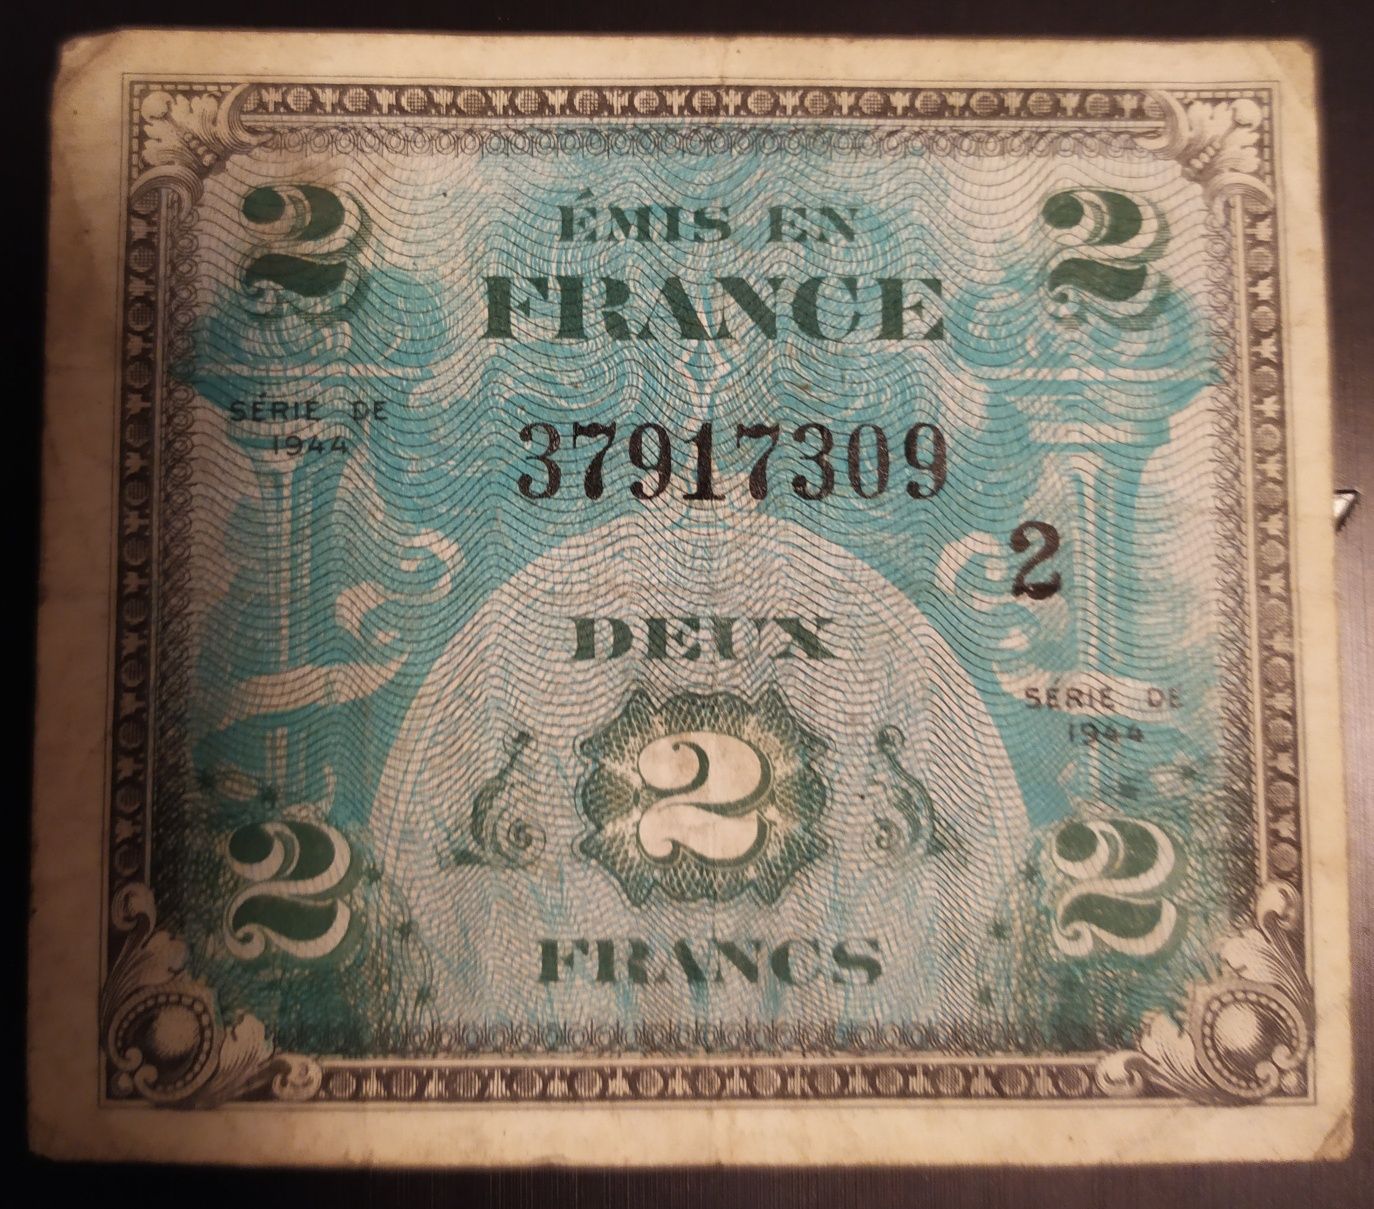 2 Franci  1944 Franta  bancnota de ocupatie aliatilor Hitler razboi